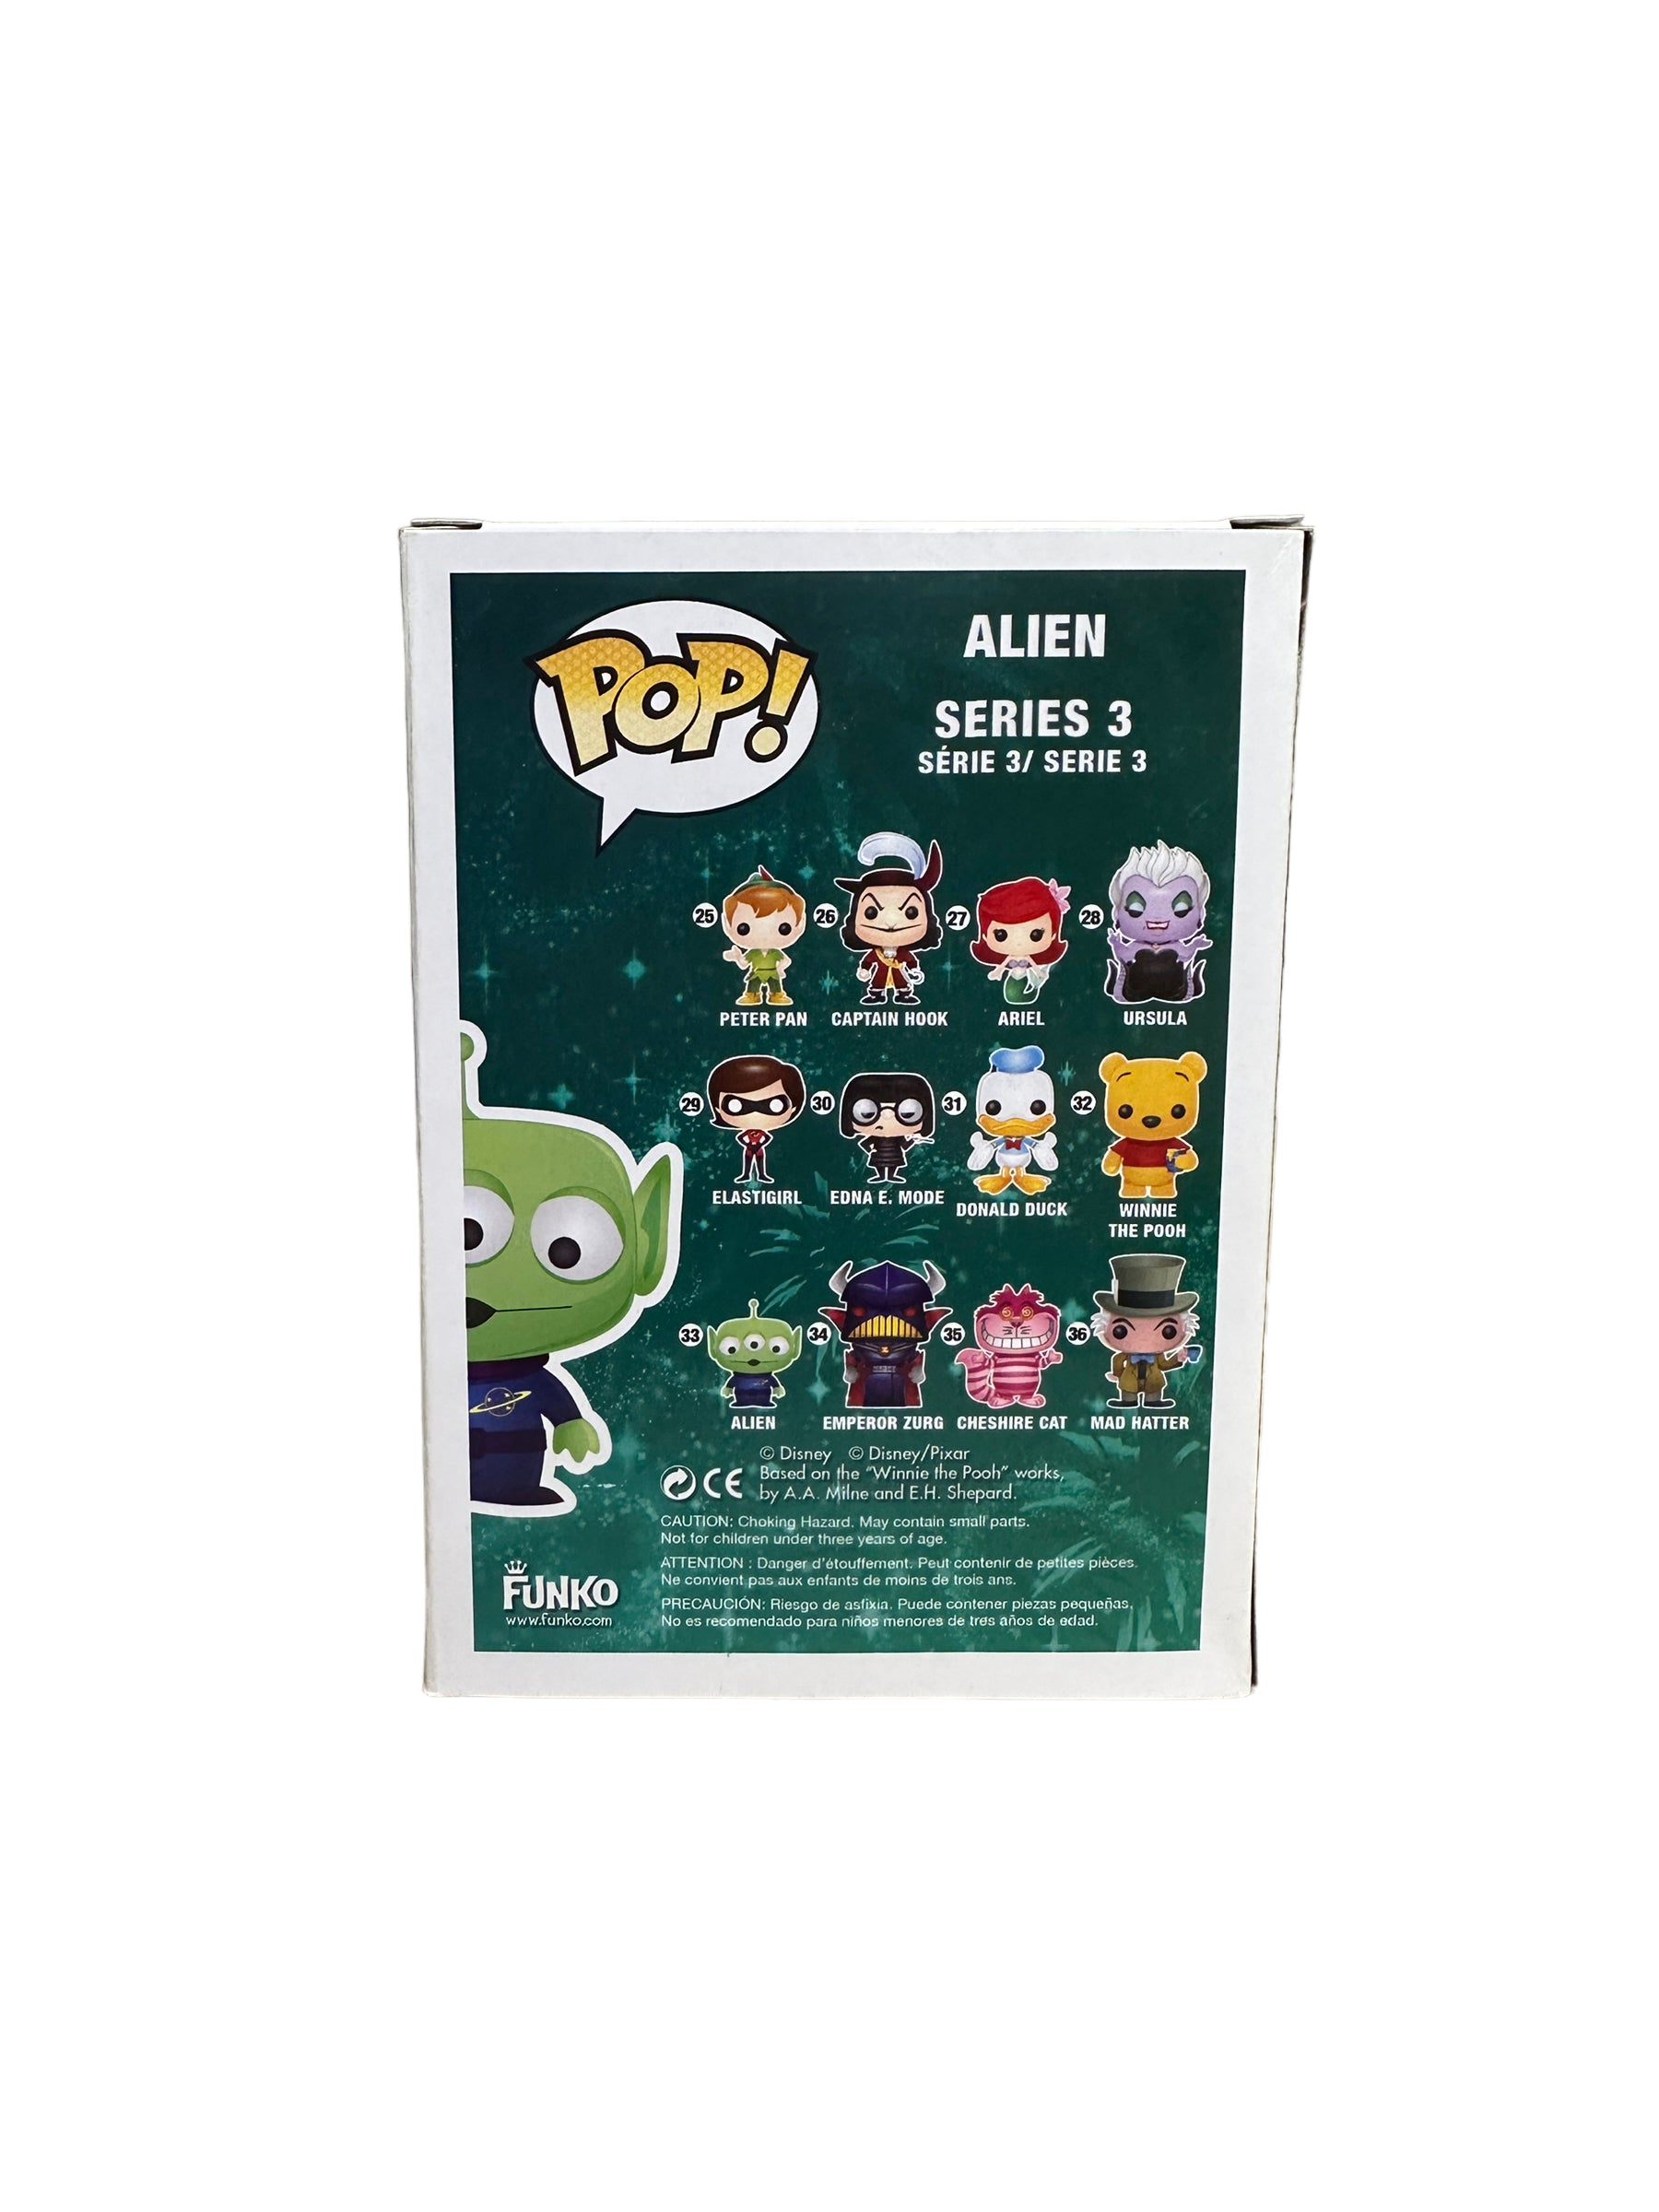 Alien #33 (Metallic) Funko Pop! - Disney Series 3 - SDCC 2012 Exclusive LE480 Pcs - Condition 8.5/10